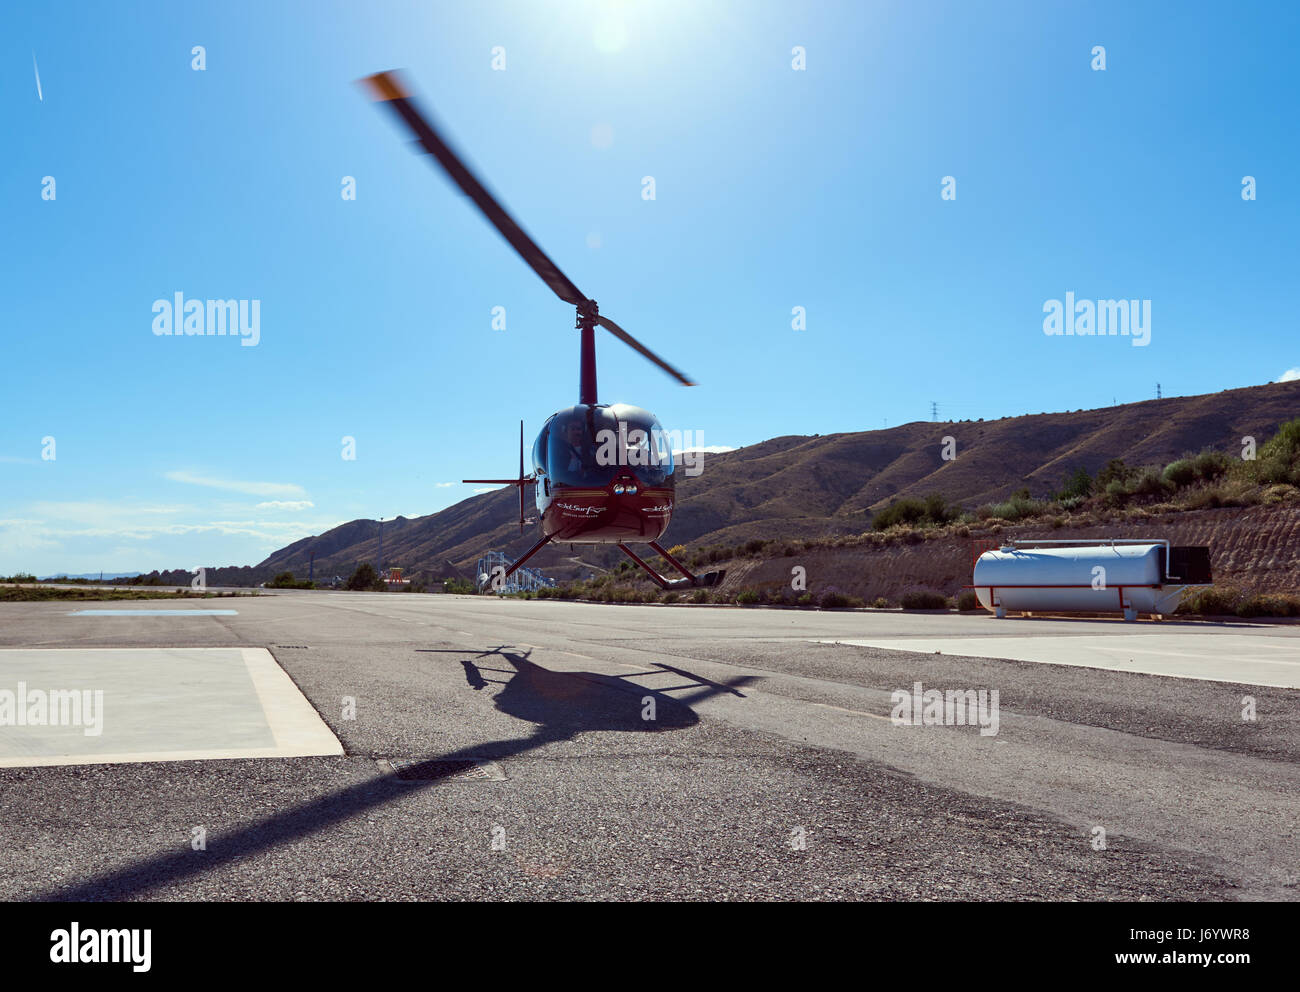 Benidorm, España - 13 de mayo de 2017: helicóptero volaba lejos. Excursión en helicóptero de Benidorm, es una atracción turística de la Costa Blanca. La provincia de Alicante. S Foto de stock